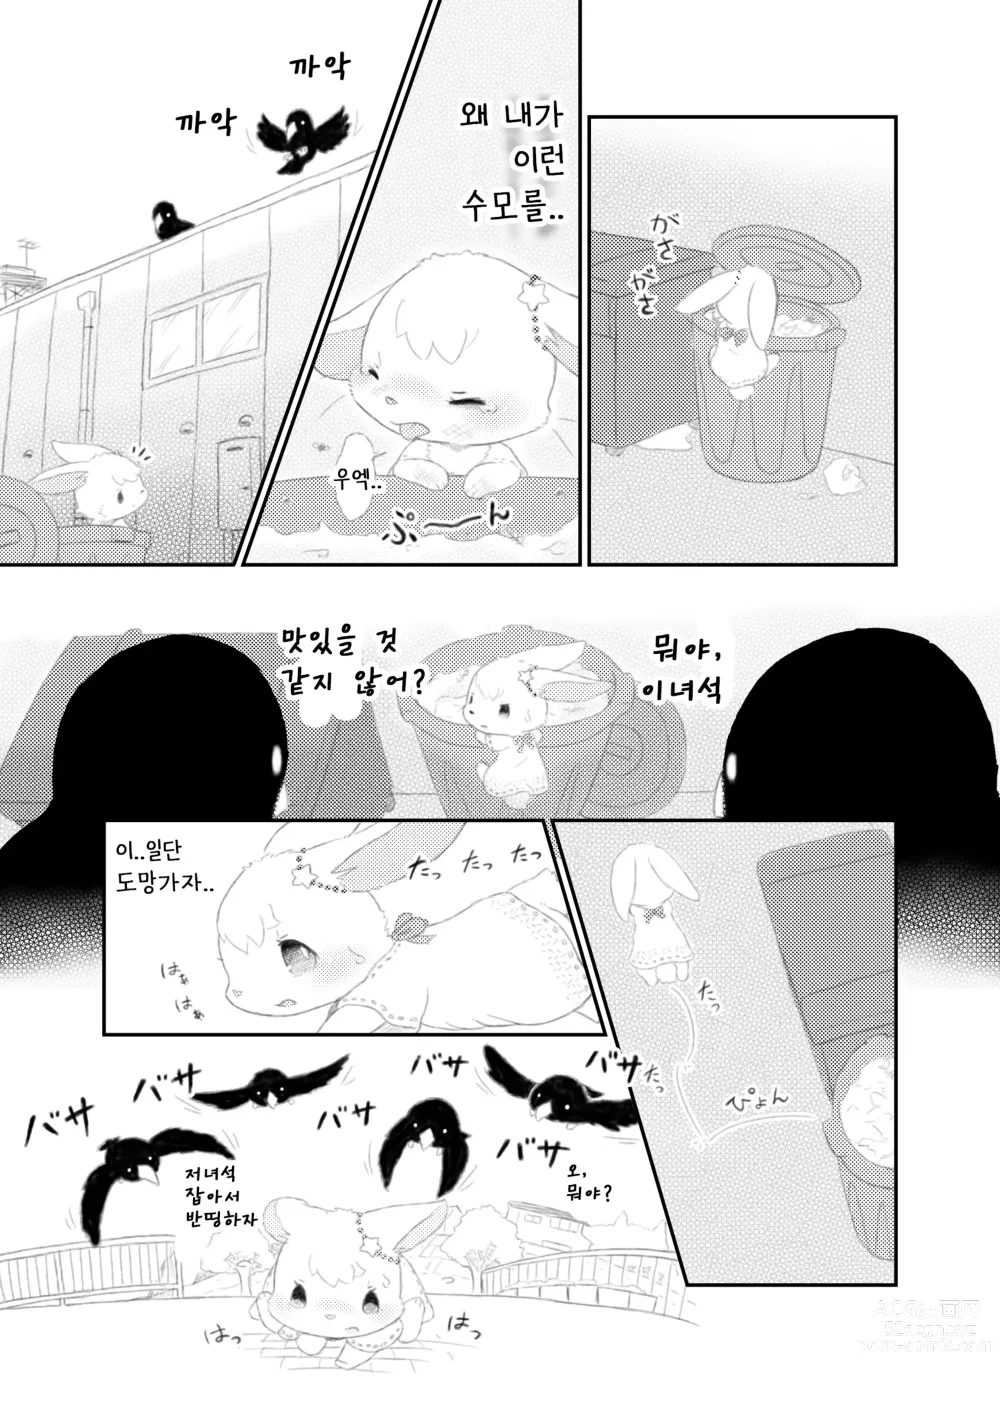 Page 5 of doujinshi 달토끼통신 1화